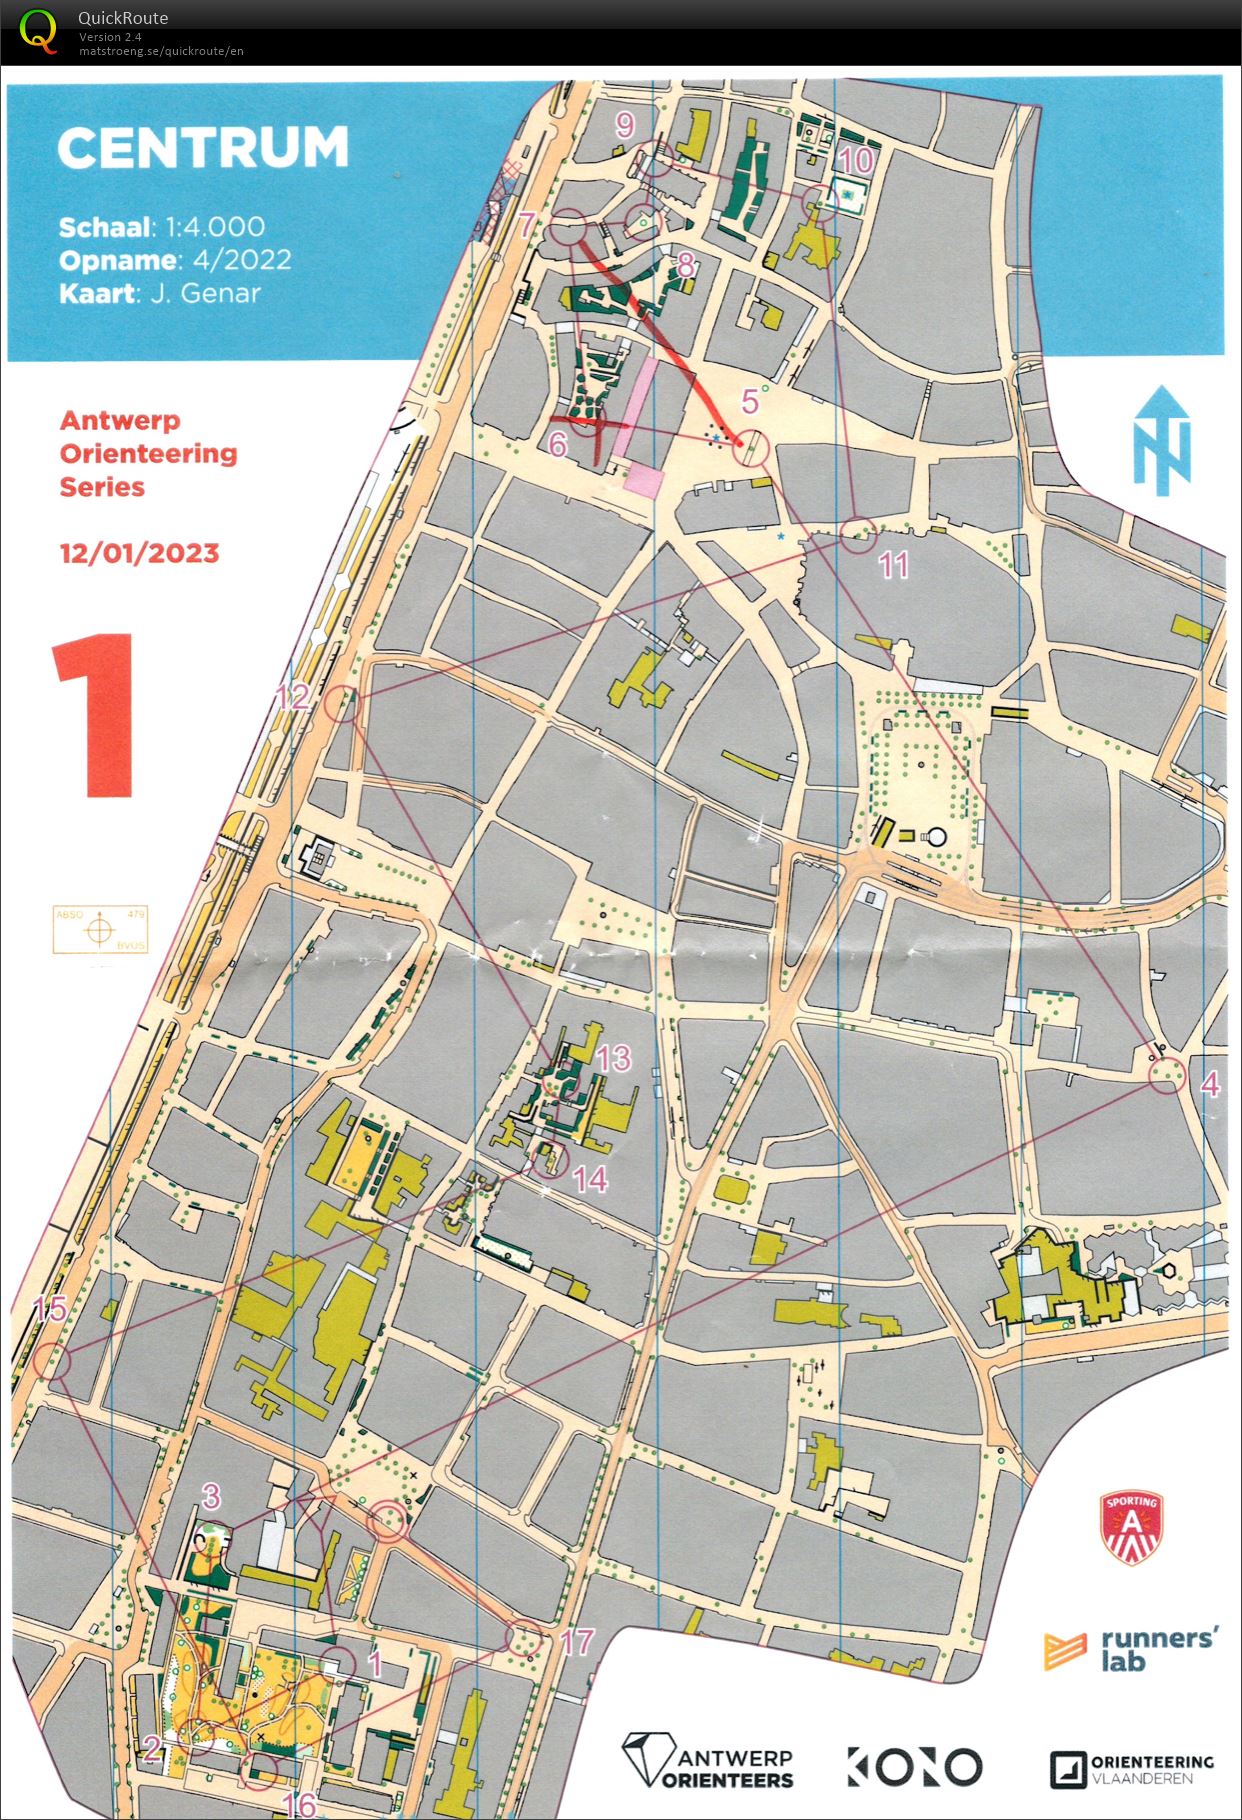 Antwerp Orienteering Series - Centrum - Lang (12-01-2023)